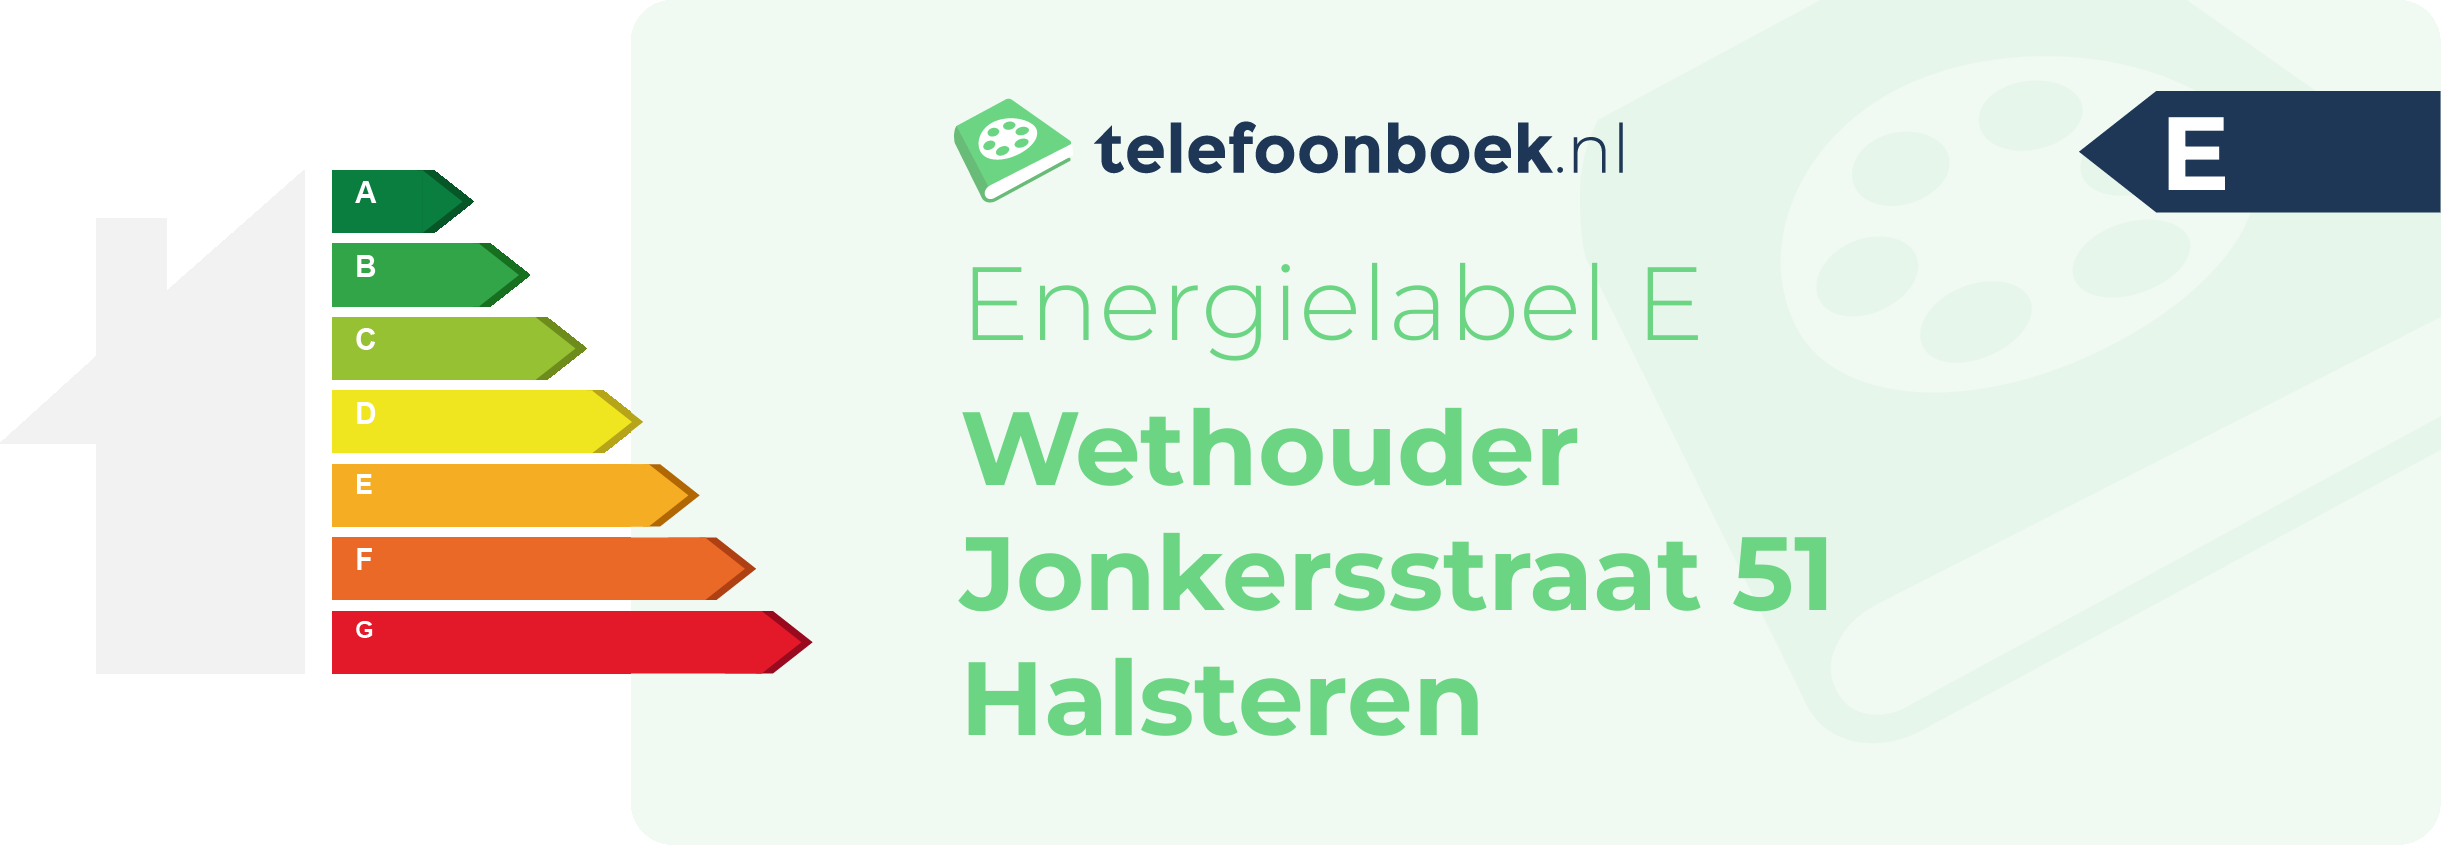 Energielabel Wethouder Jonkersstraat 51 Halsteren